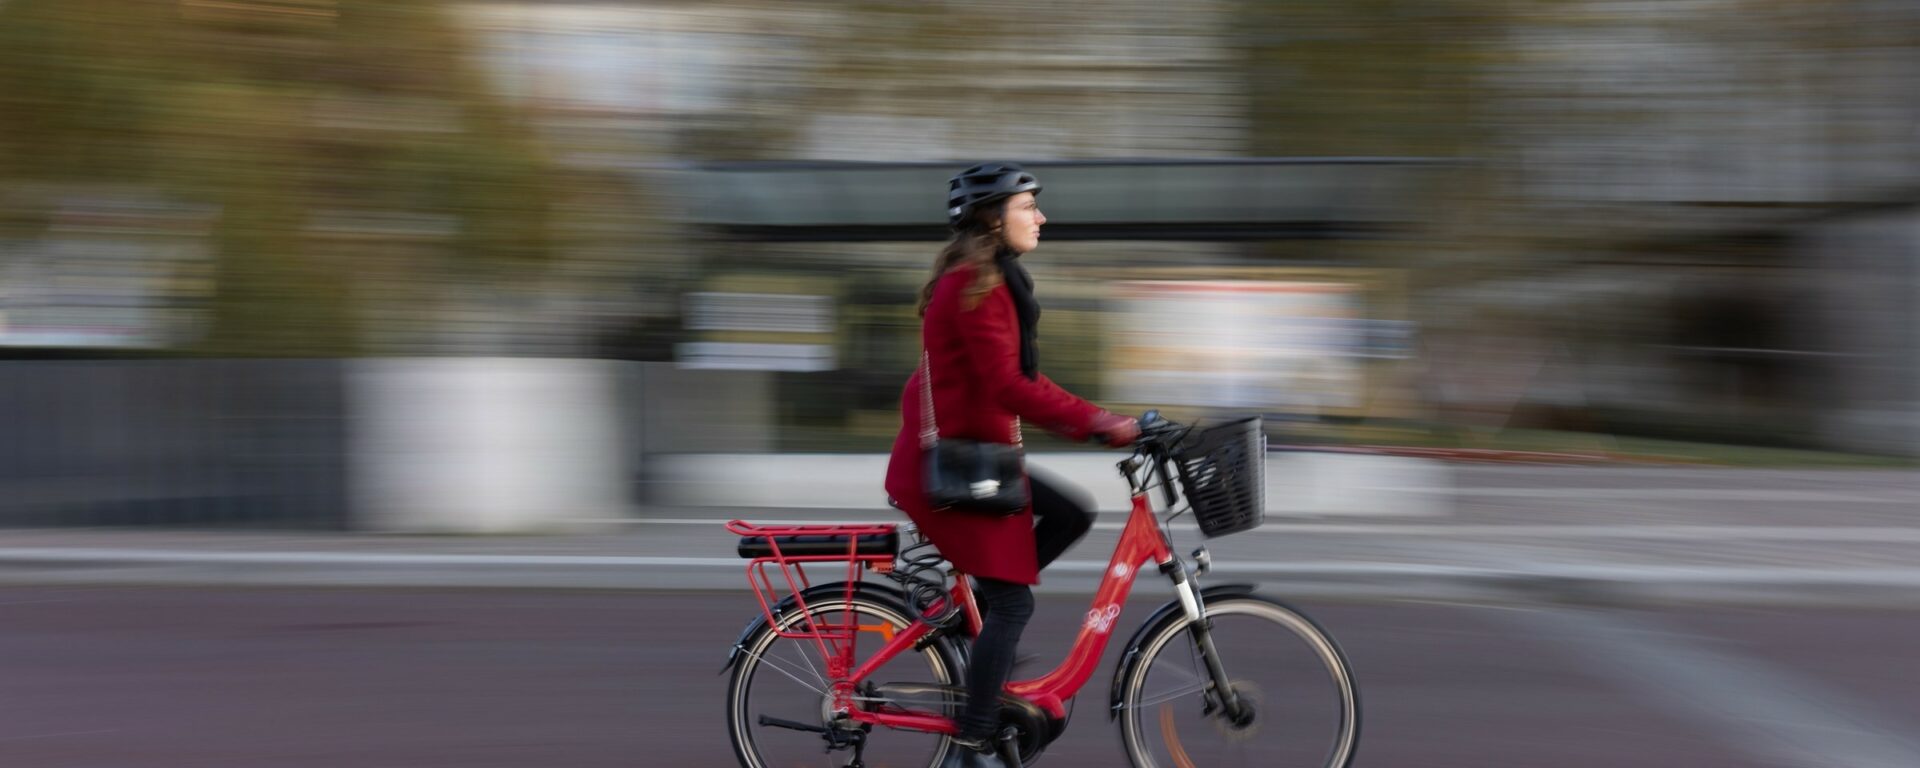 Jeune femme avec un manteau rouge sur un vélo rouge